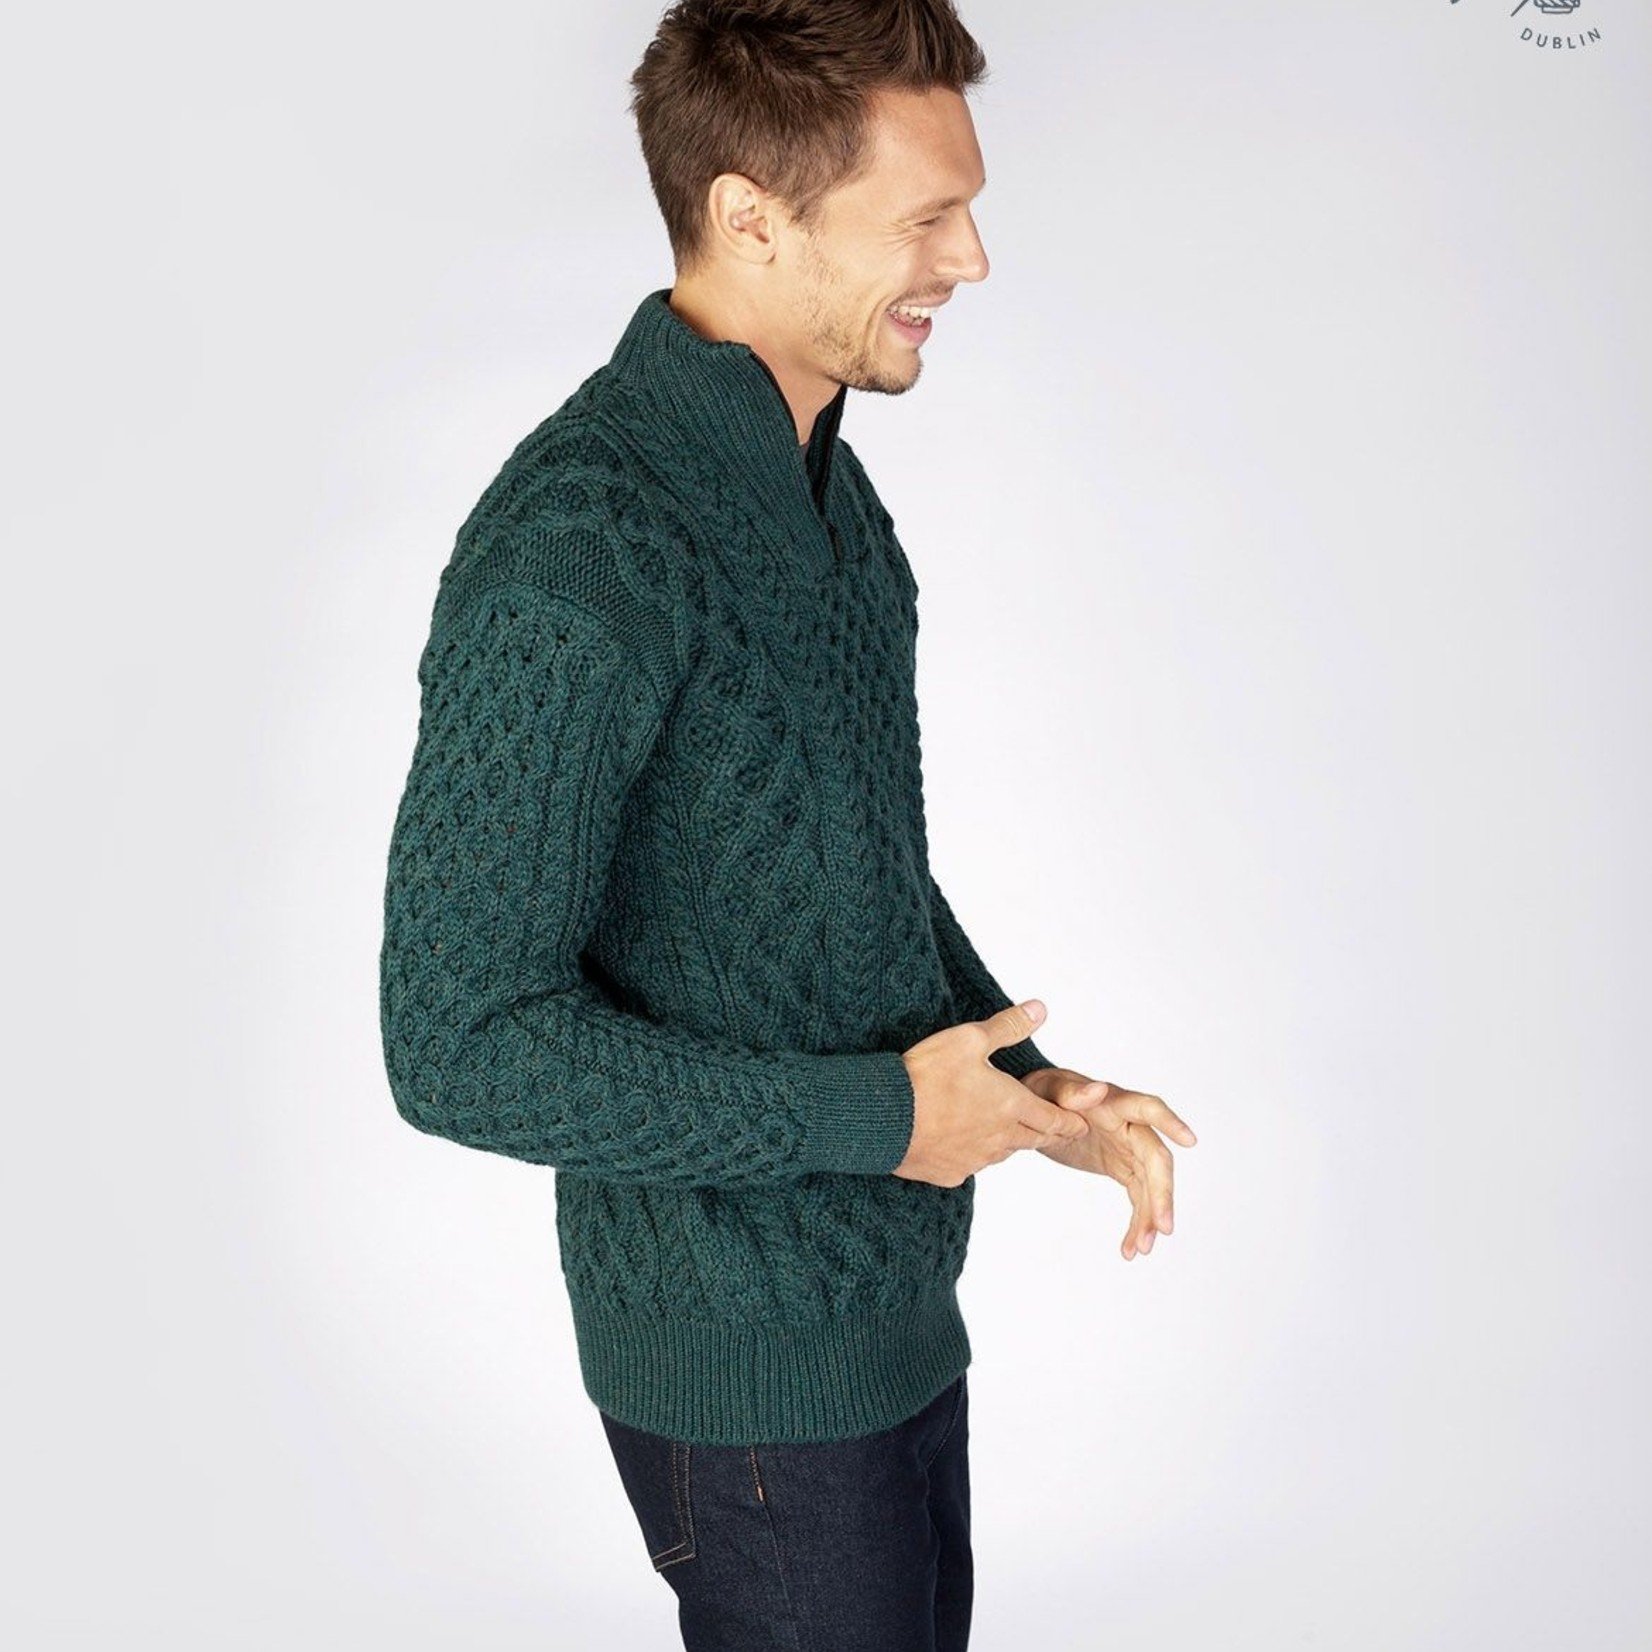 IrelandsEye Knitwear Wool 1/4 Zip Evergreen Sweater